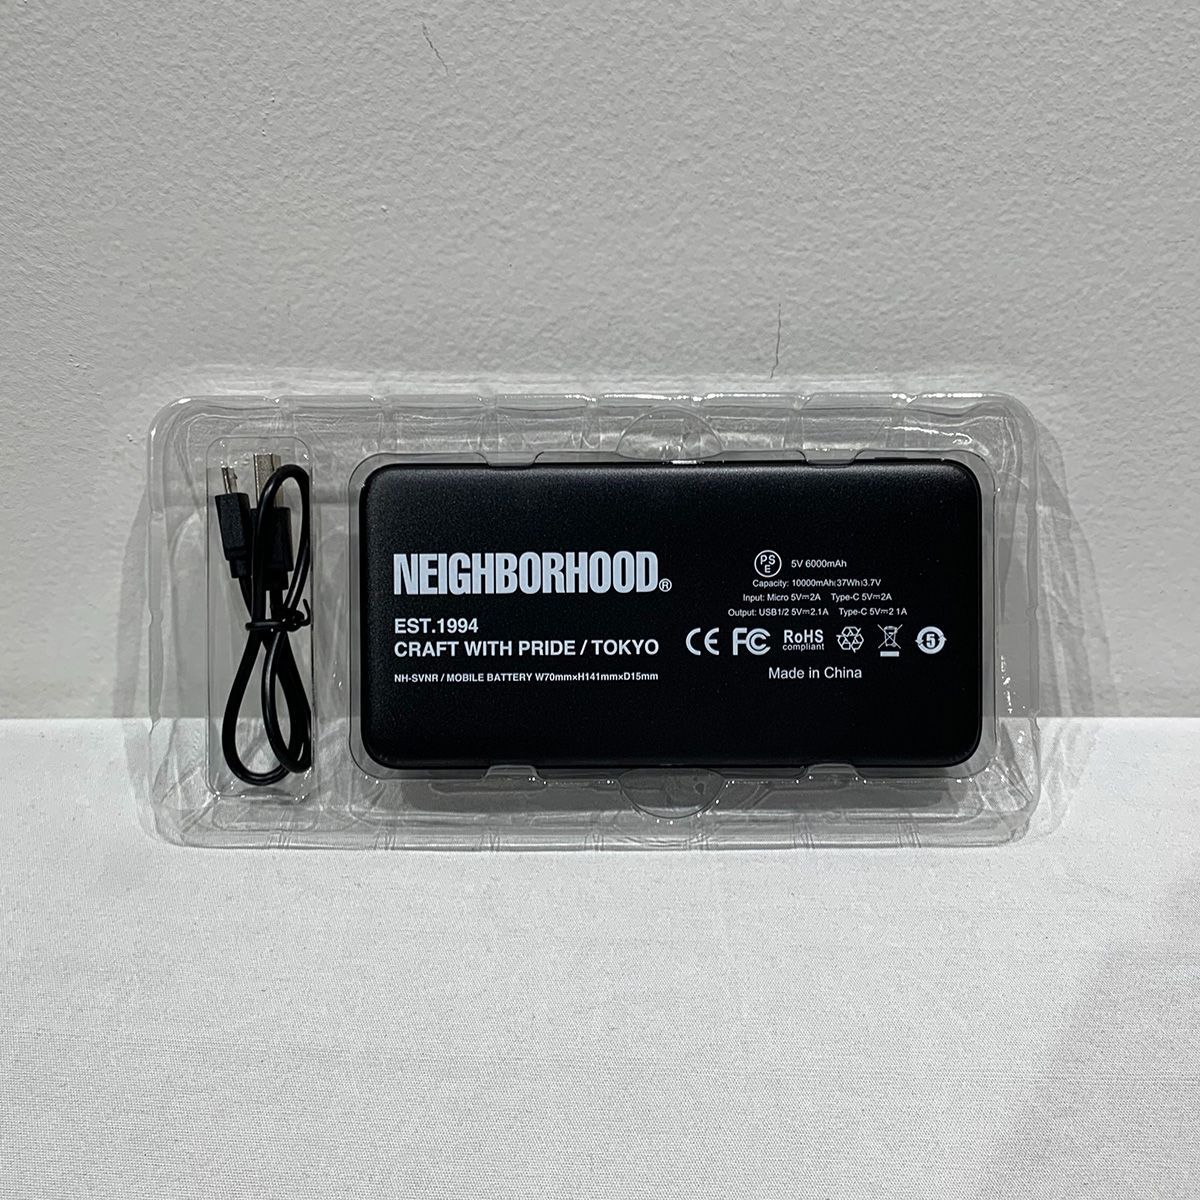 ネイバーフッド ロゴプリントモバイルバッテリー 充電器-1